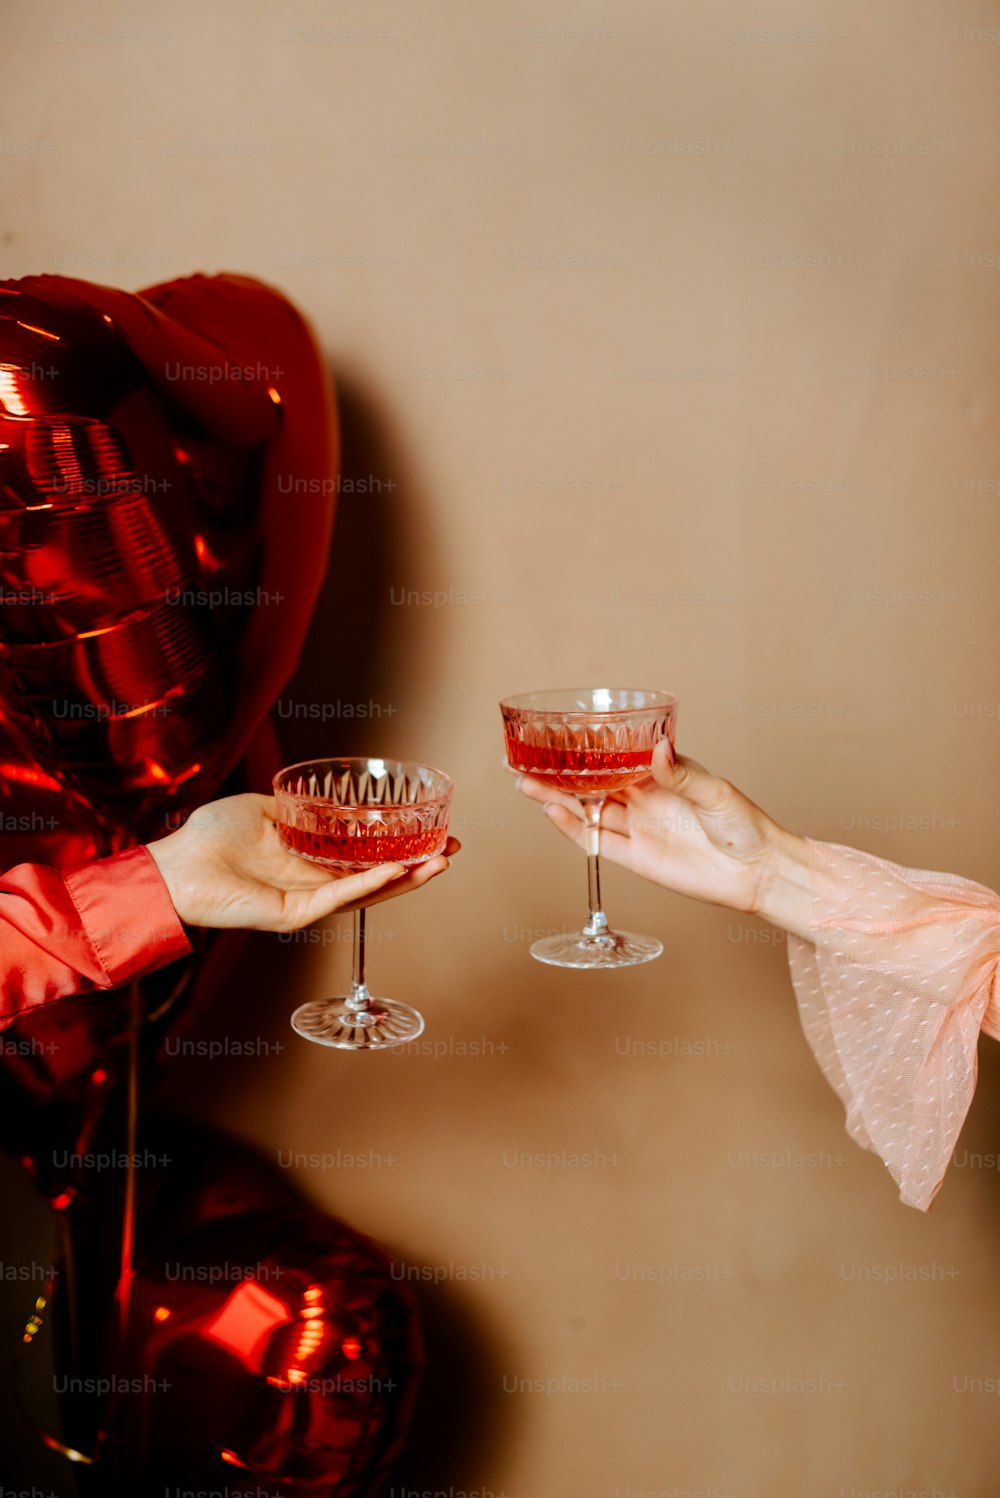 uma pessoa segurando um copo de vinho na frente de um balão